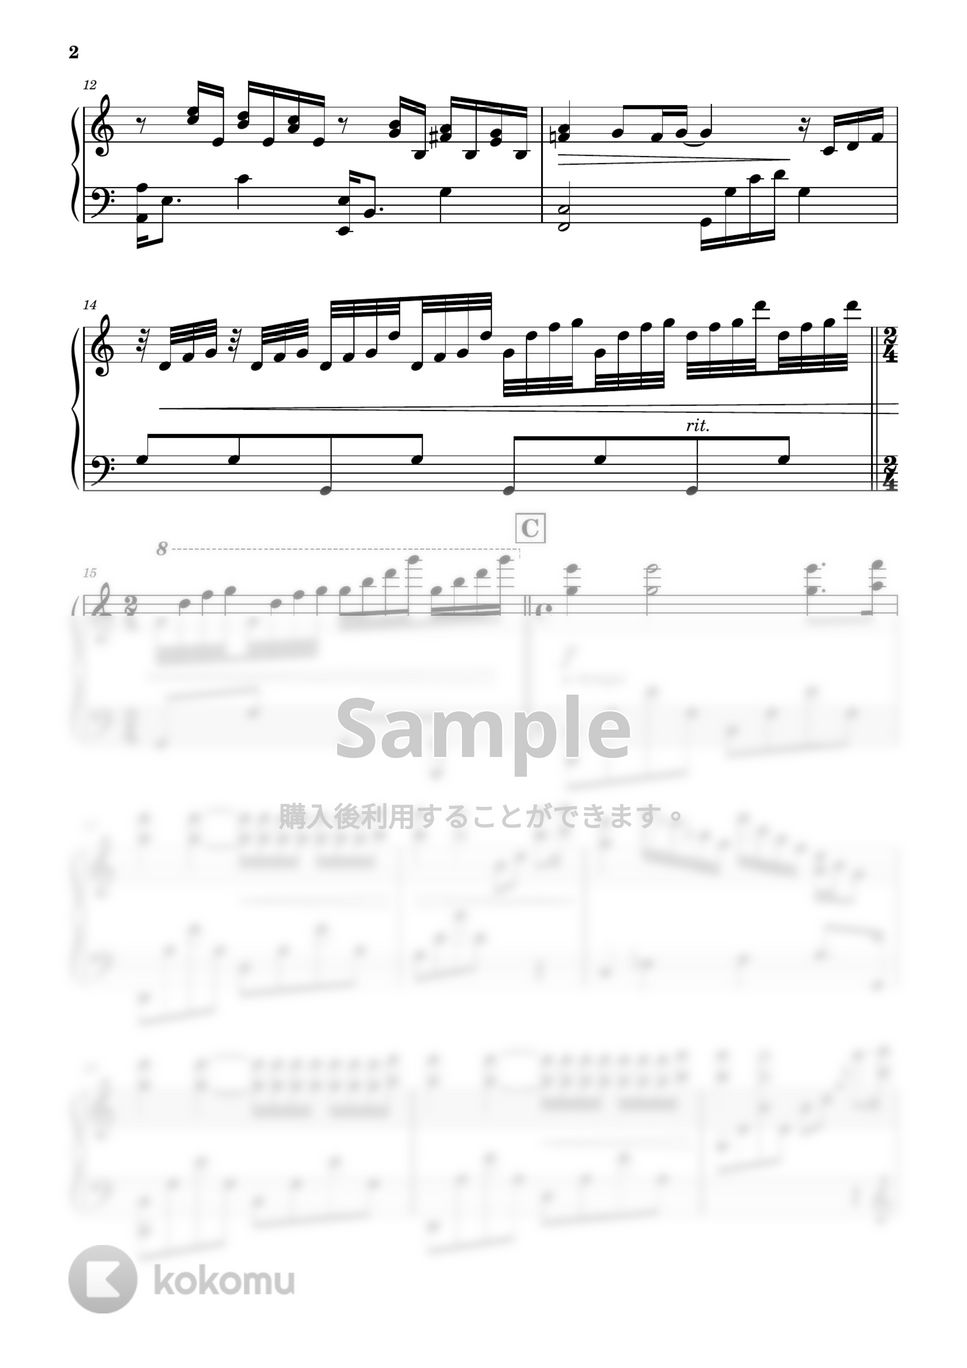 リチャード・クレイダーマン - 渚のアデリーヌ (ピアノ) by PiaFlu